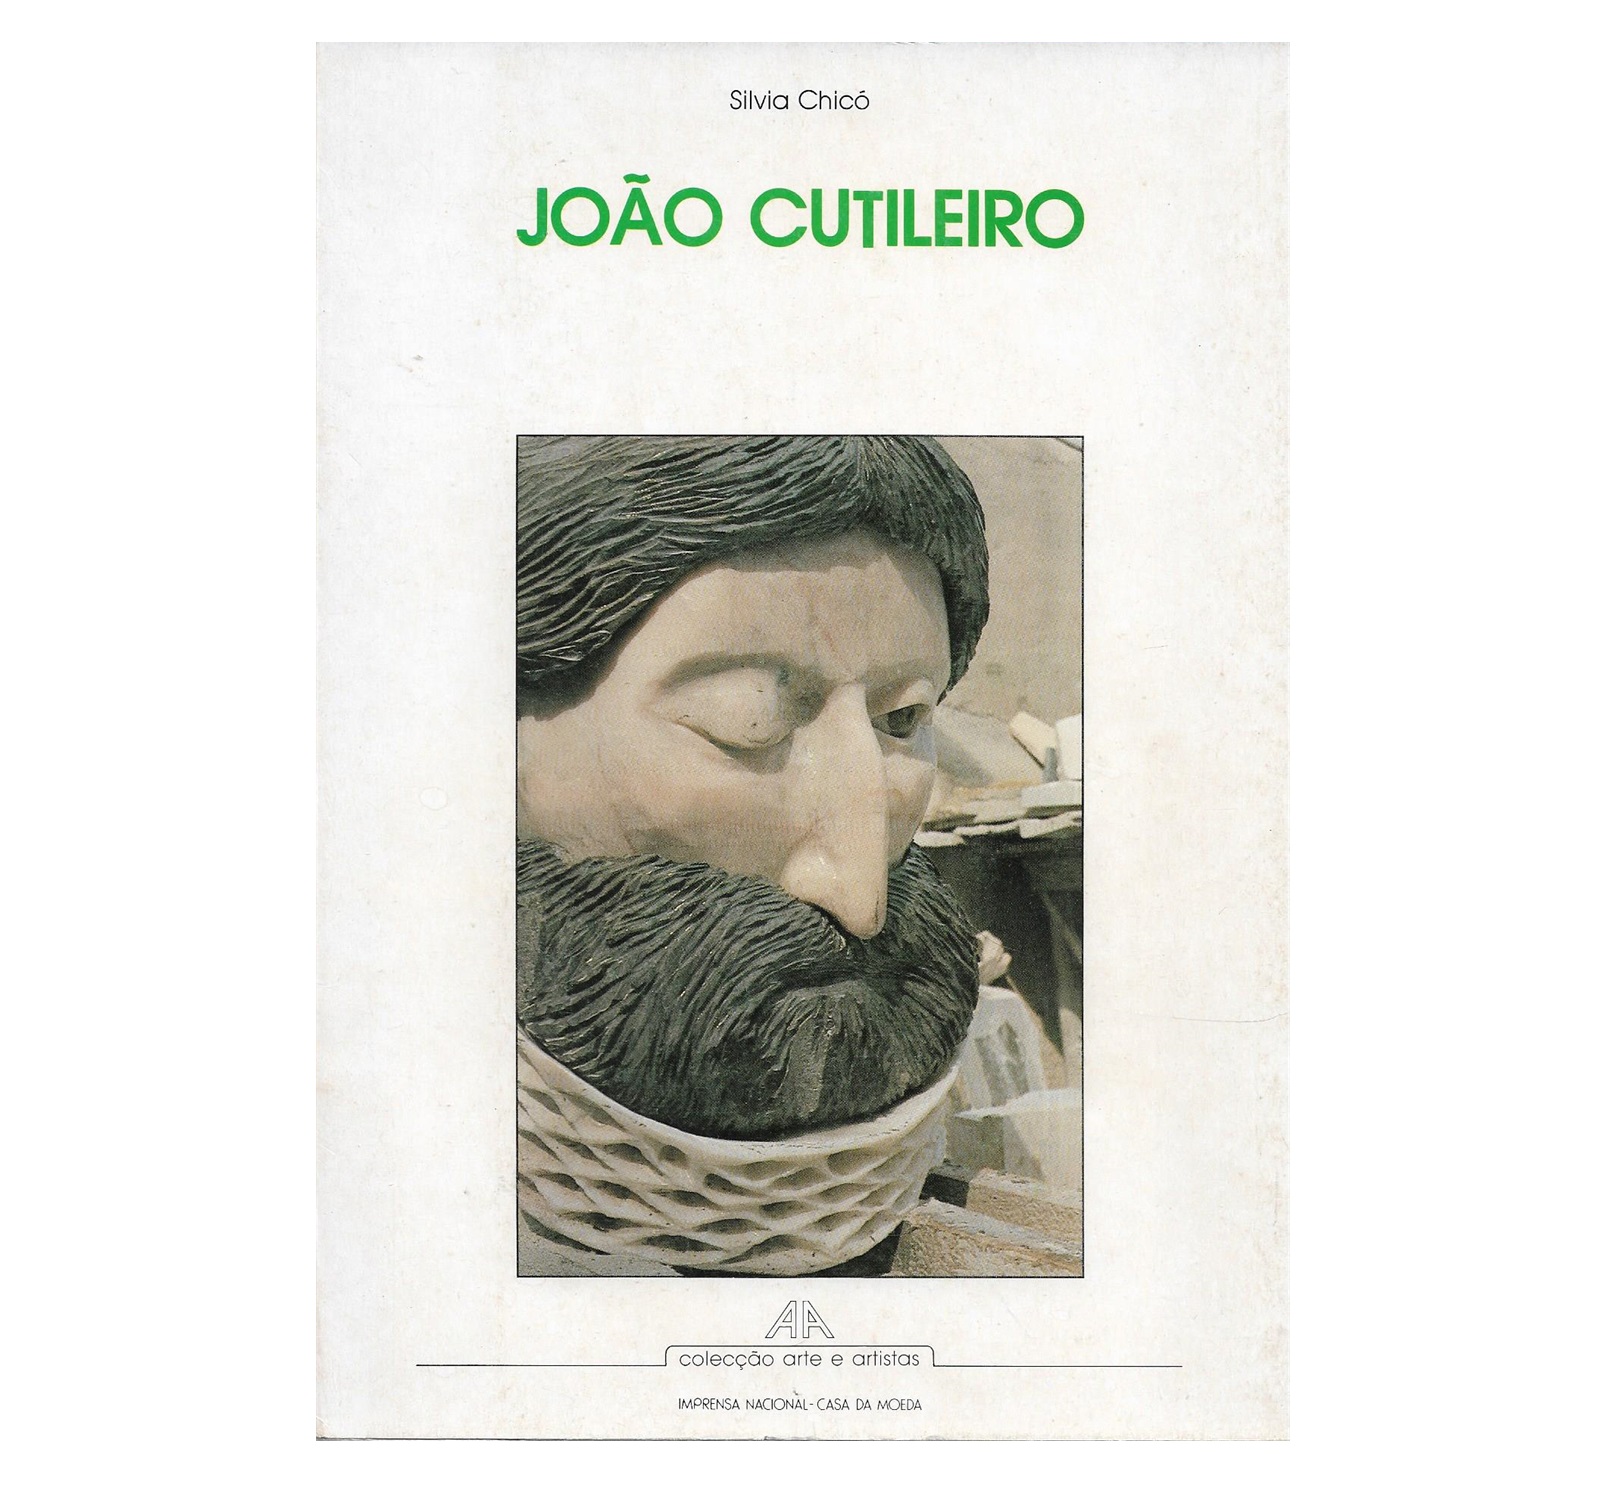 JOÃO CUTILEIRO